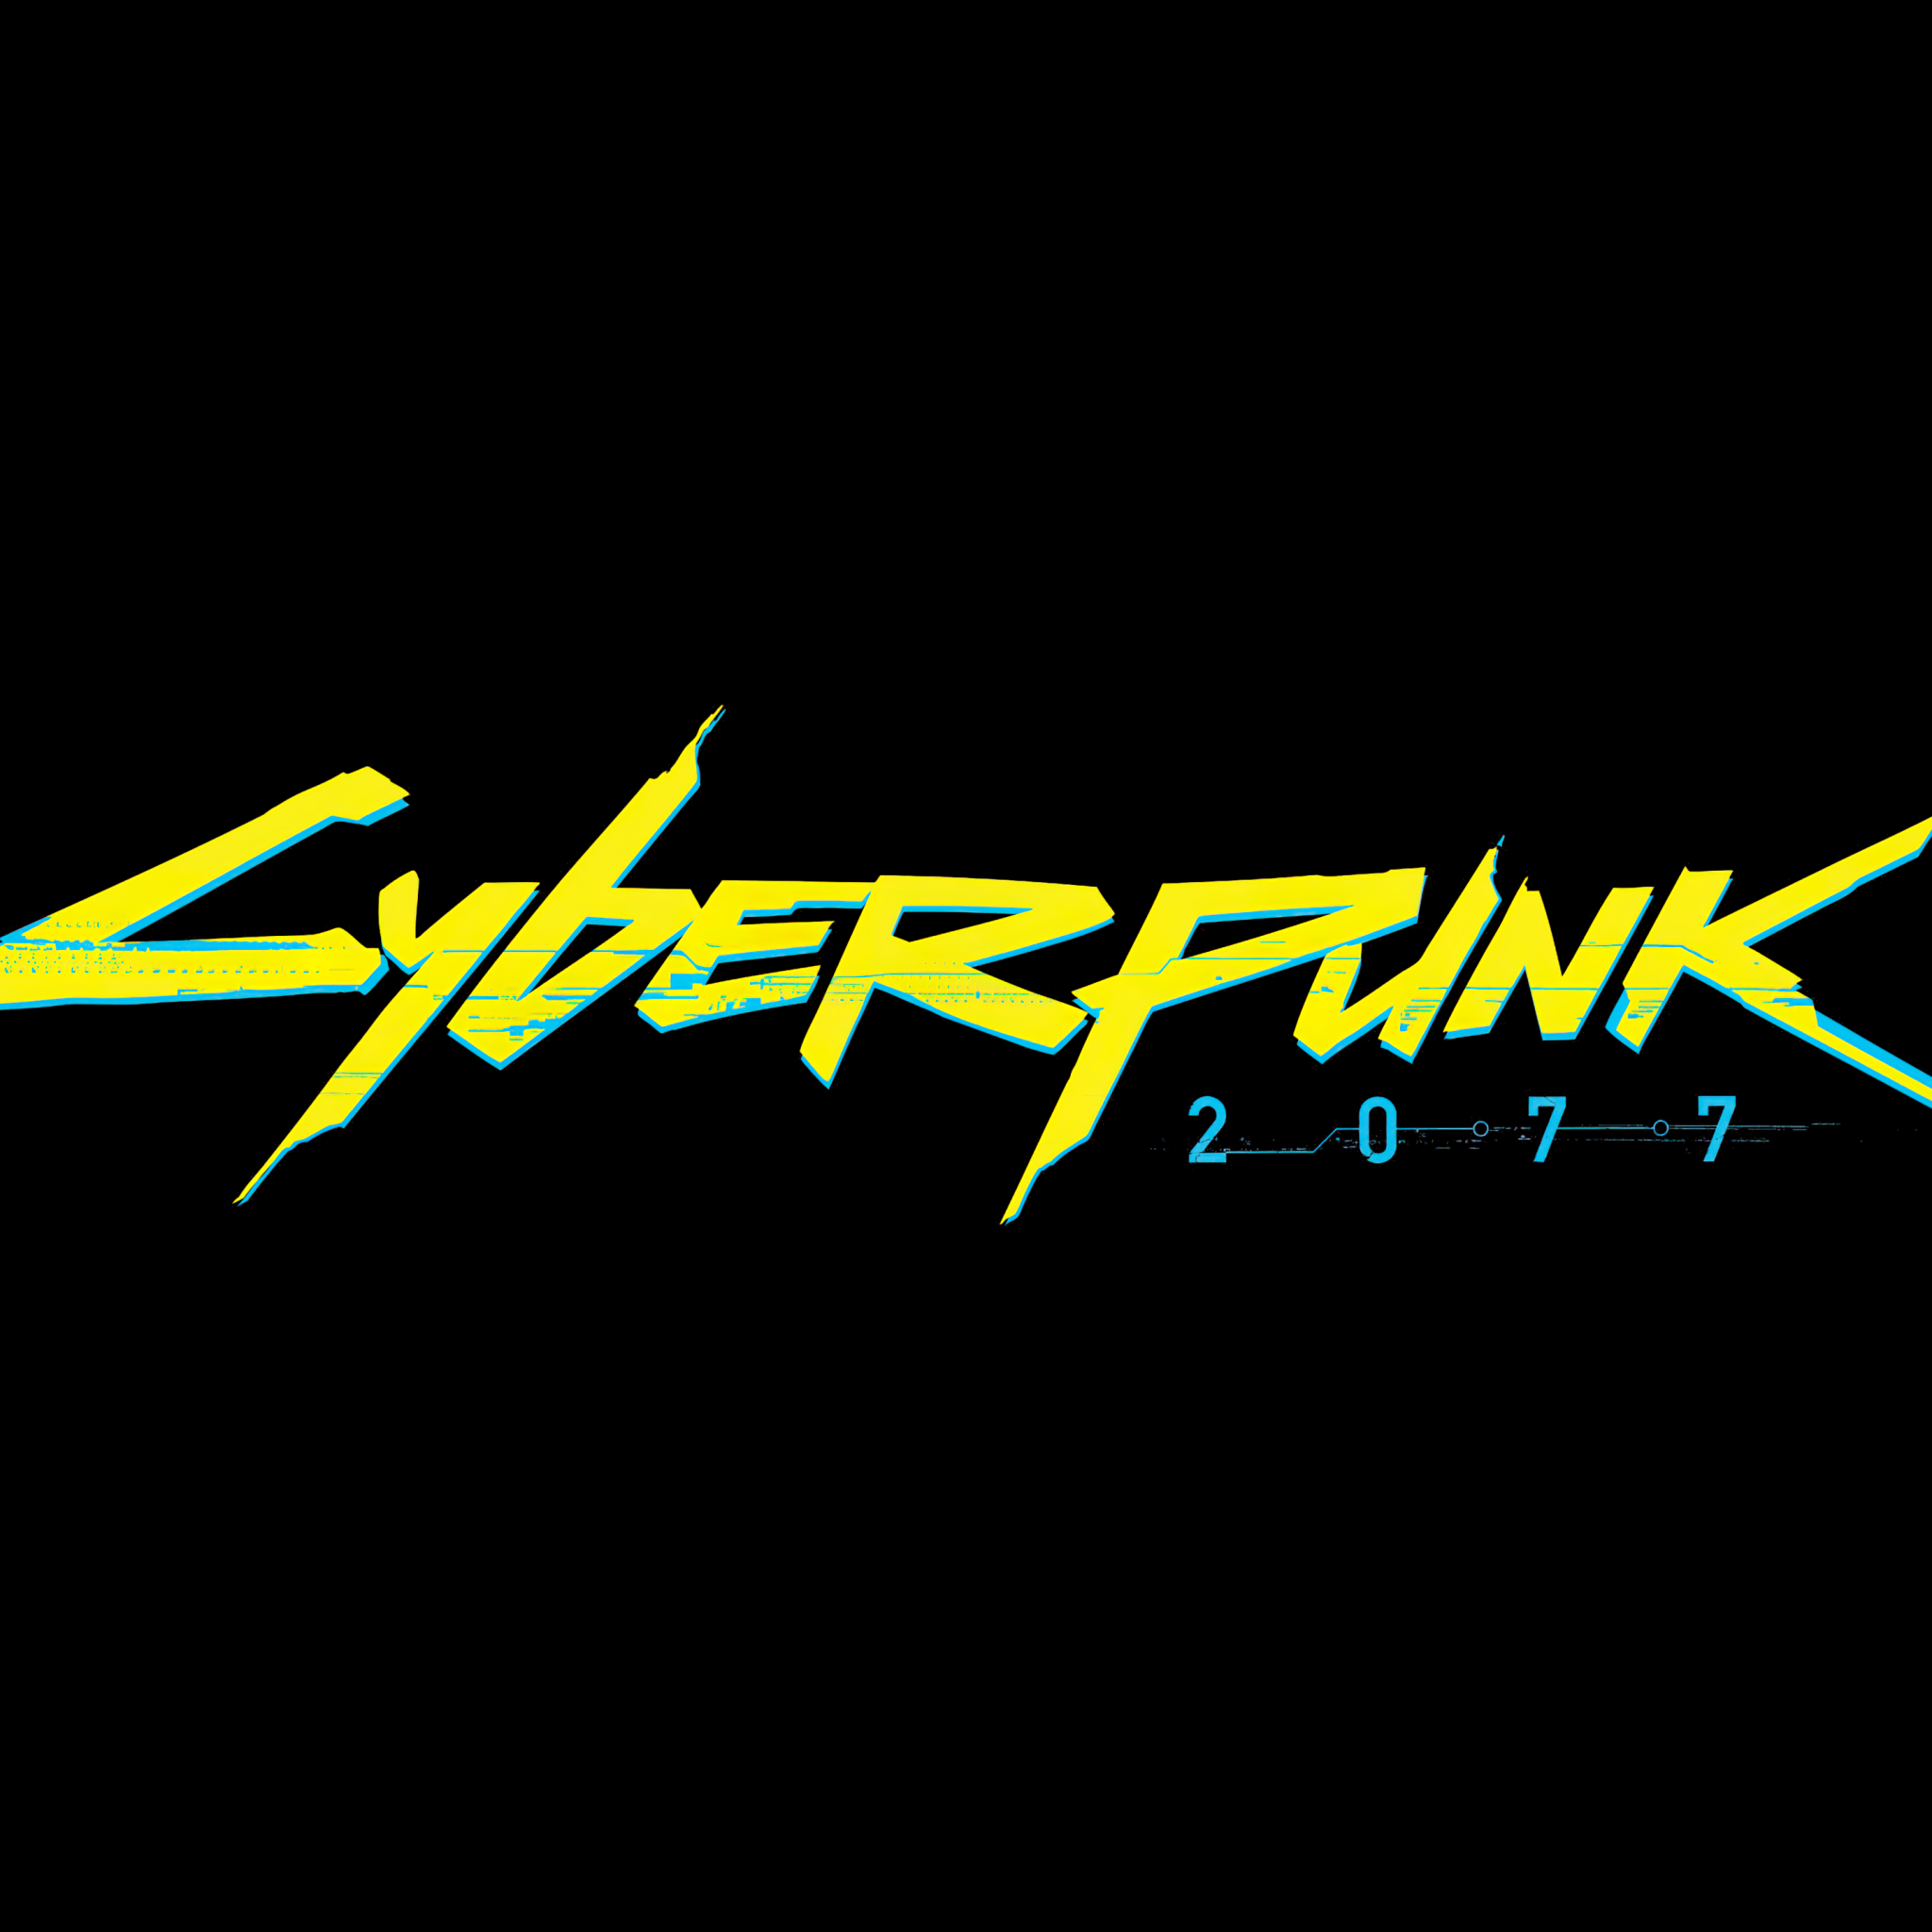 Cyberpunk black screen фото 95